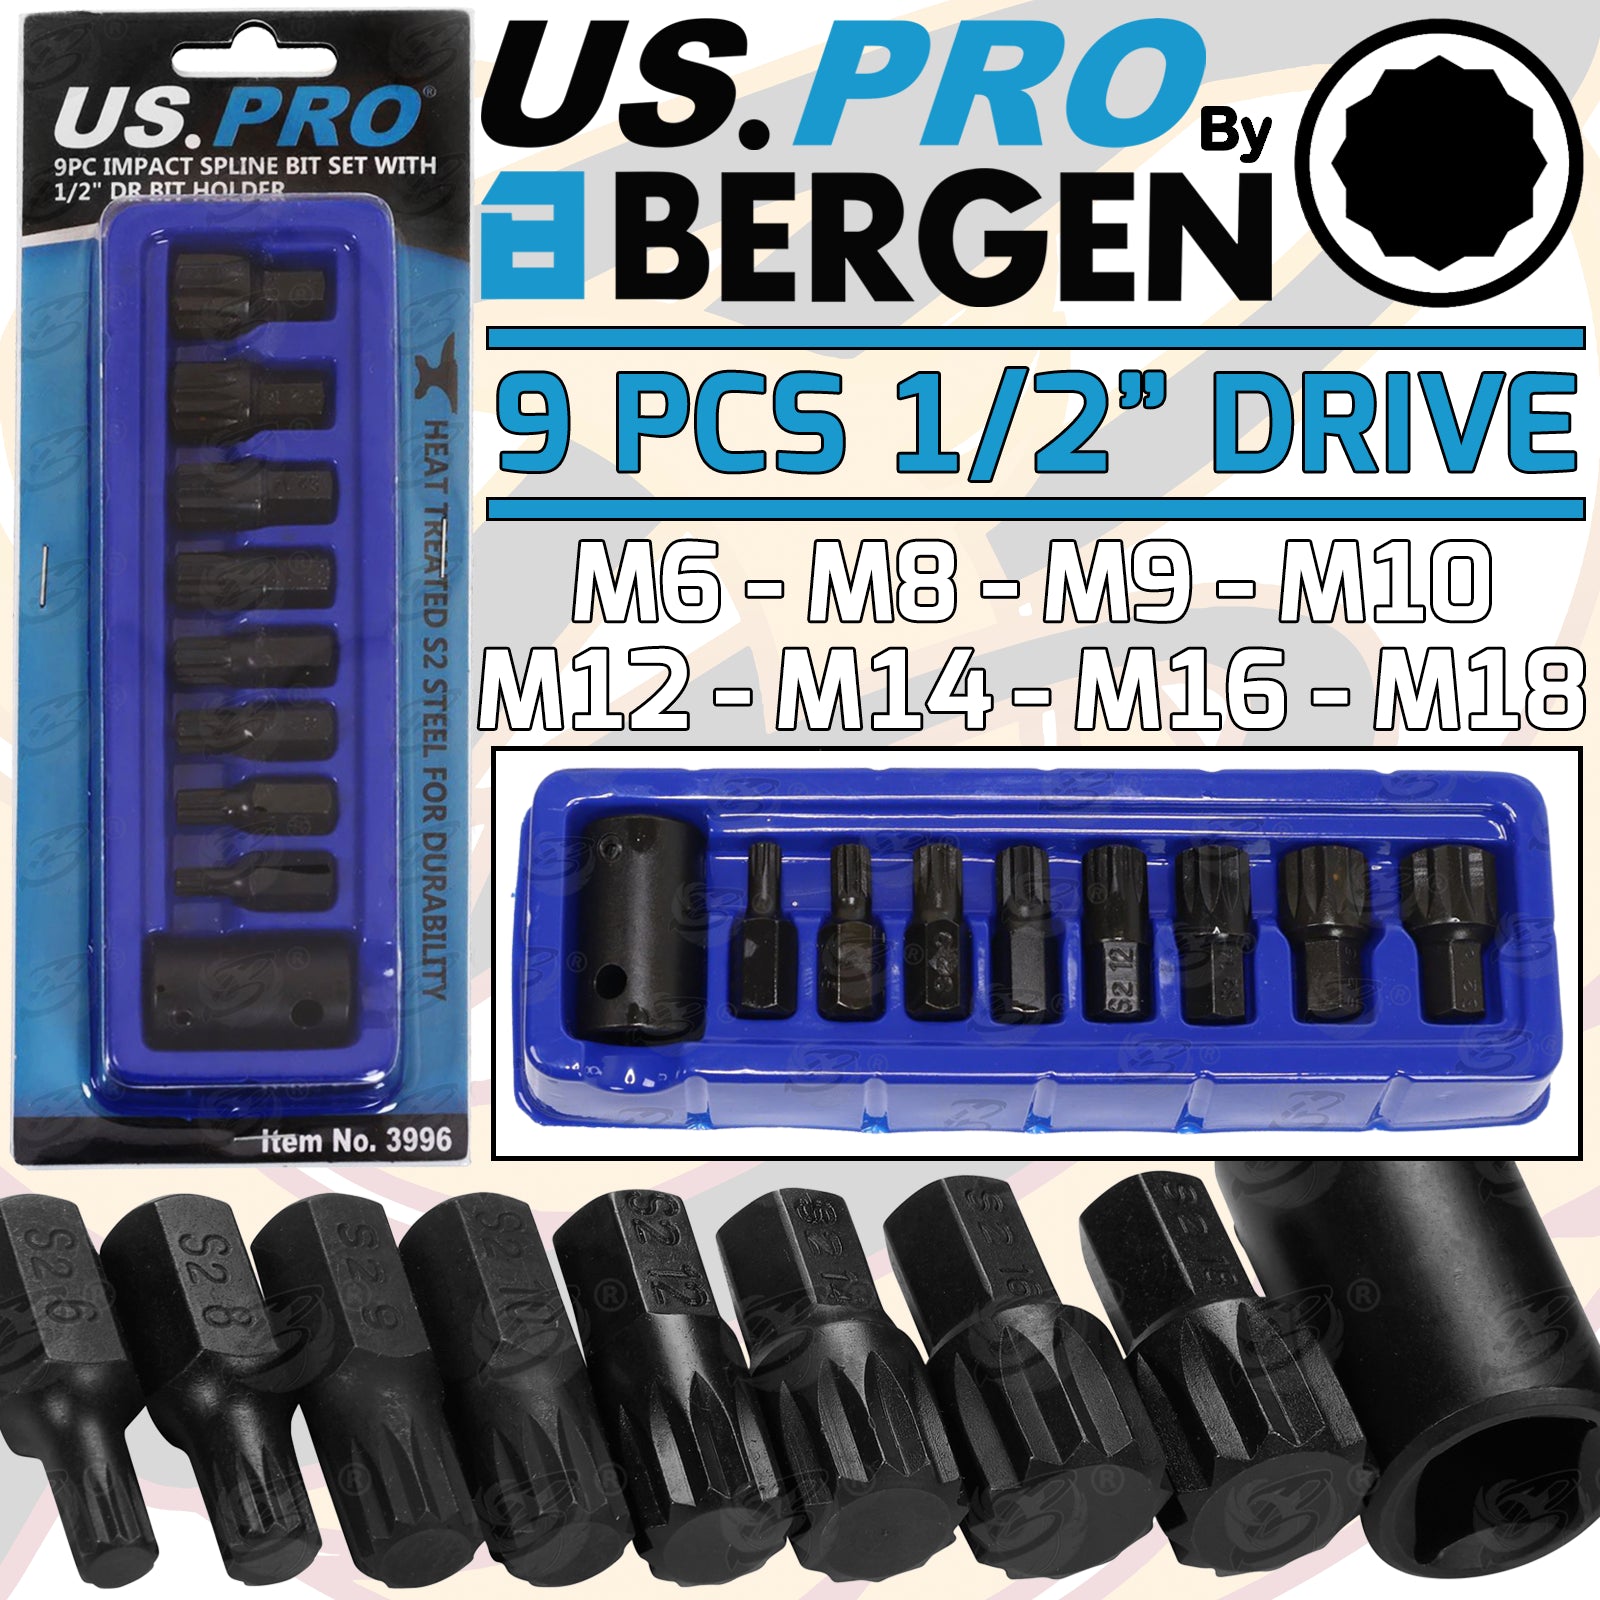 US PRO 9PCS 1/2" DRIVE IMPACT SPLINE BIT SOCKETS M6 - M18